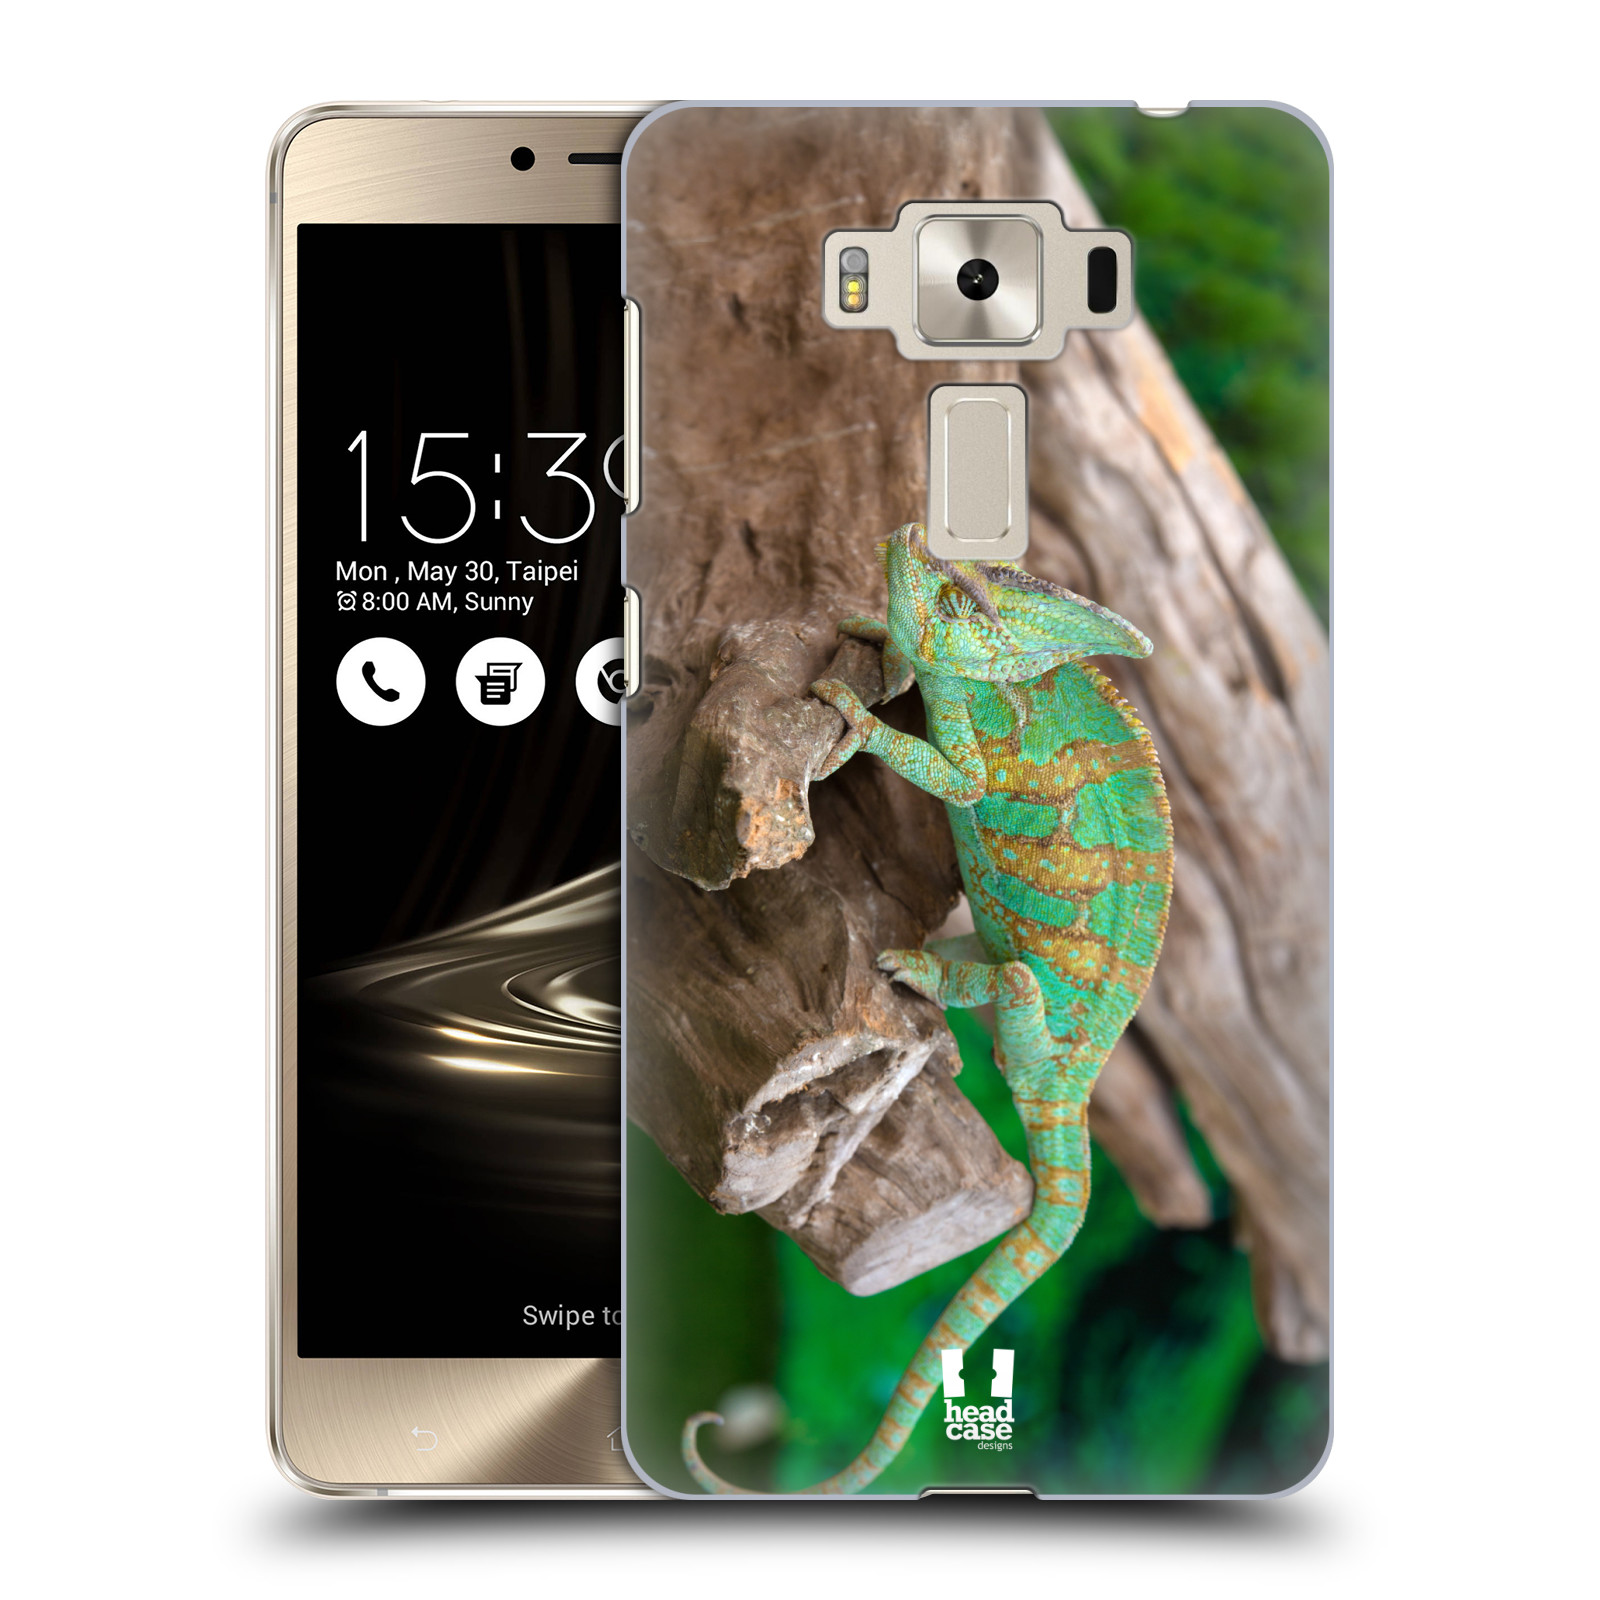 HEAD CASE plastový obal na mobil Asus Zenfone 3 DELUXE ZS550KL vzor slavná zvířata foto chameleon